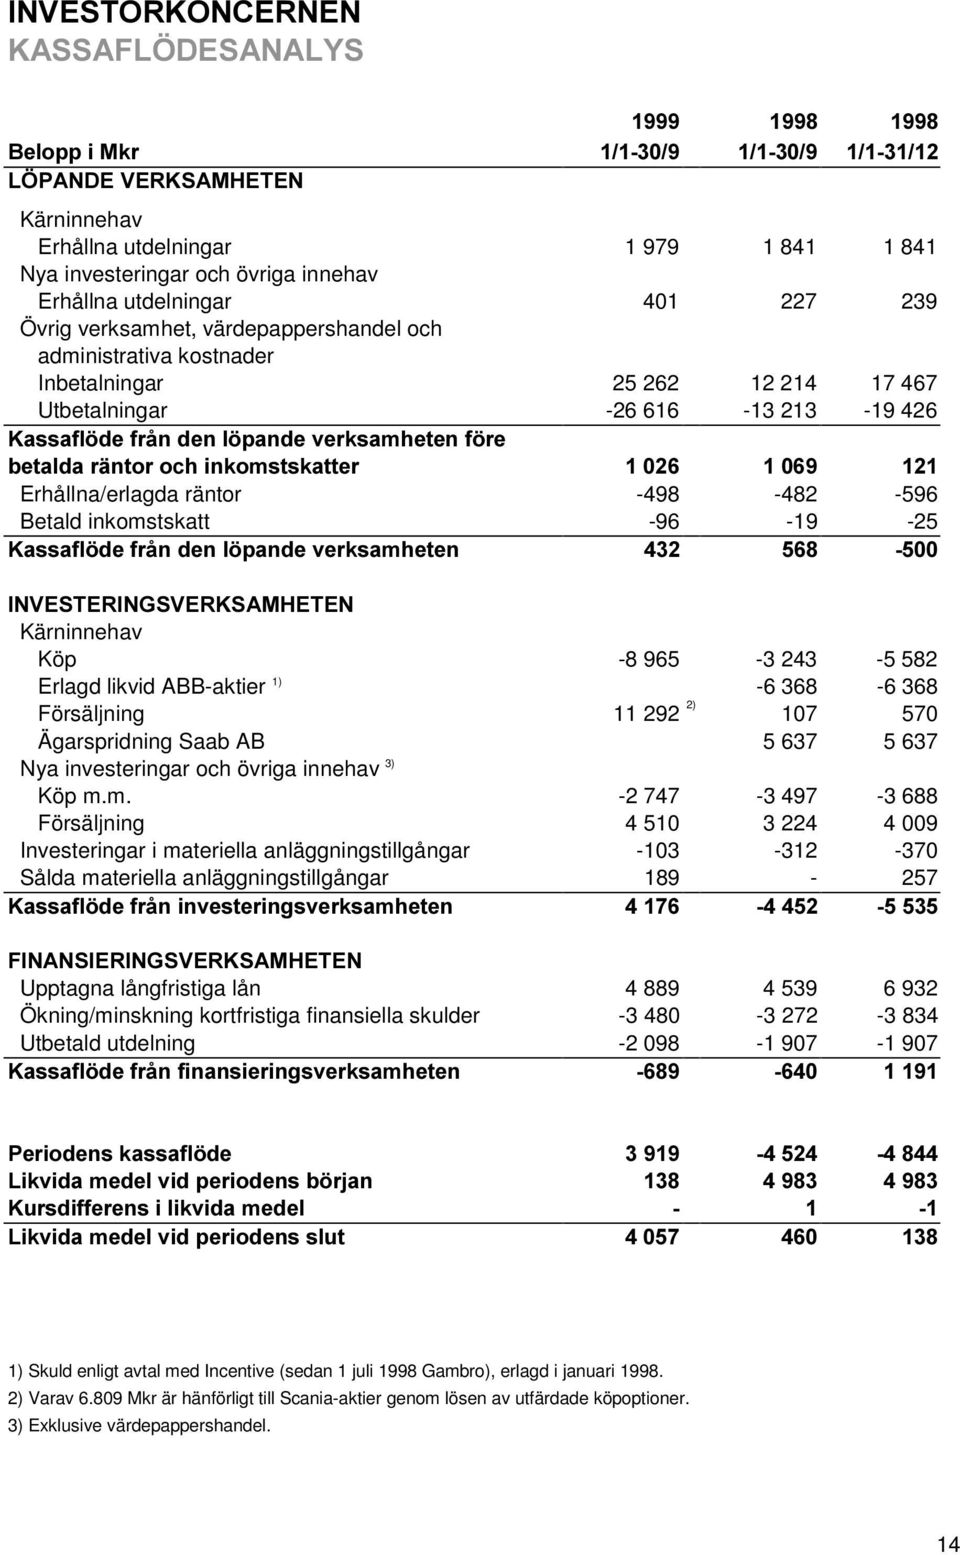 1) -6 368-6 368 Försäljning 11 292 2) 107 570 Ägarspridning Saab AB 5 637 5 637 Nya investeringar och övriga innehav 3) Köp m.